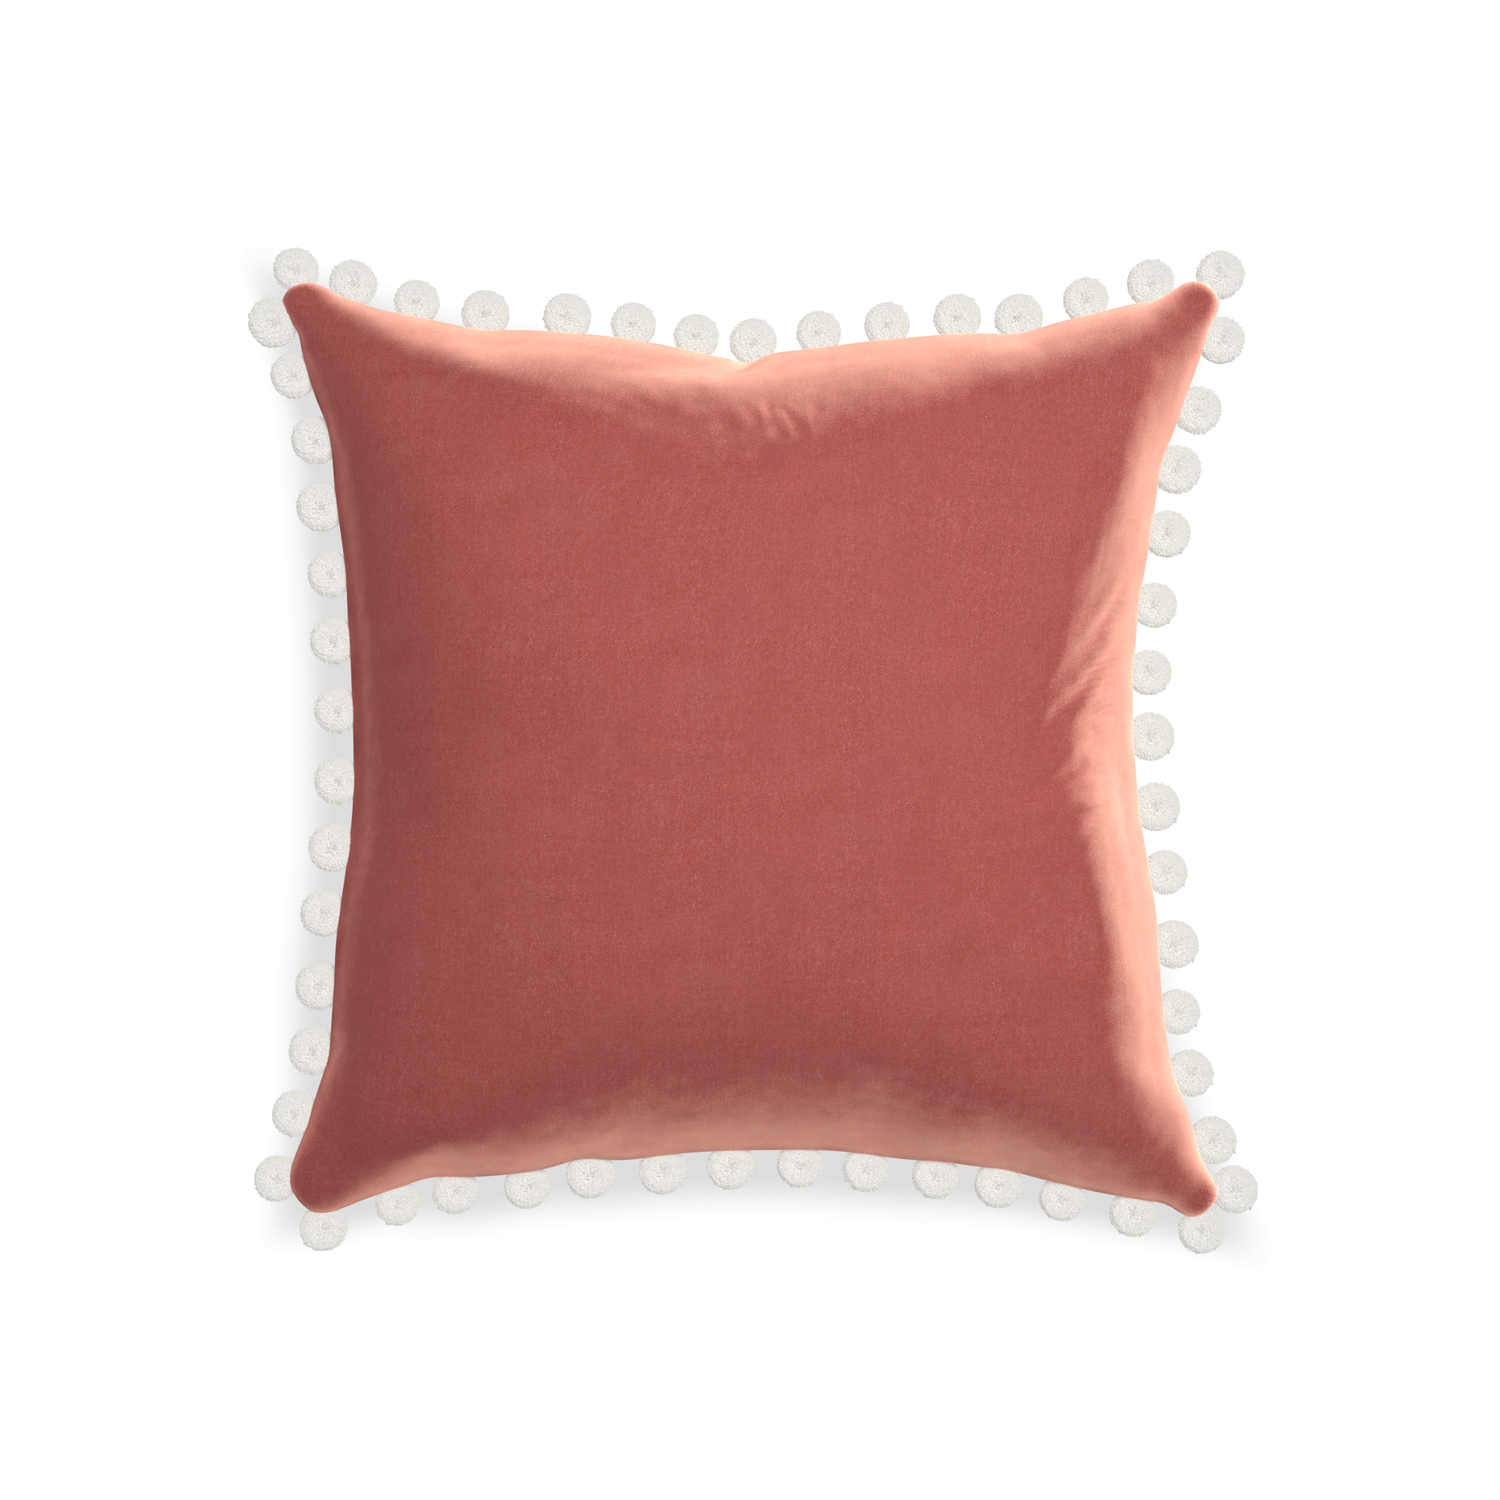 square coral velvet pillow with white pom poms